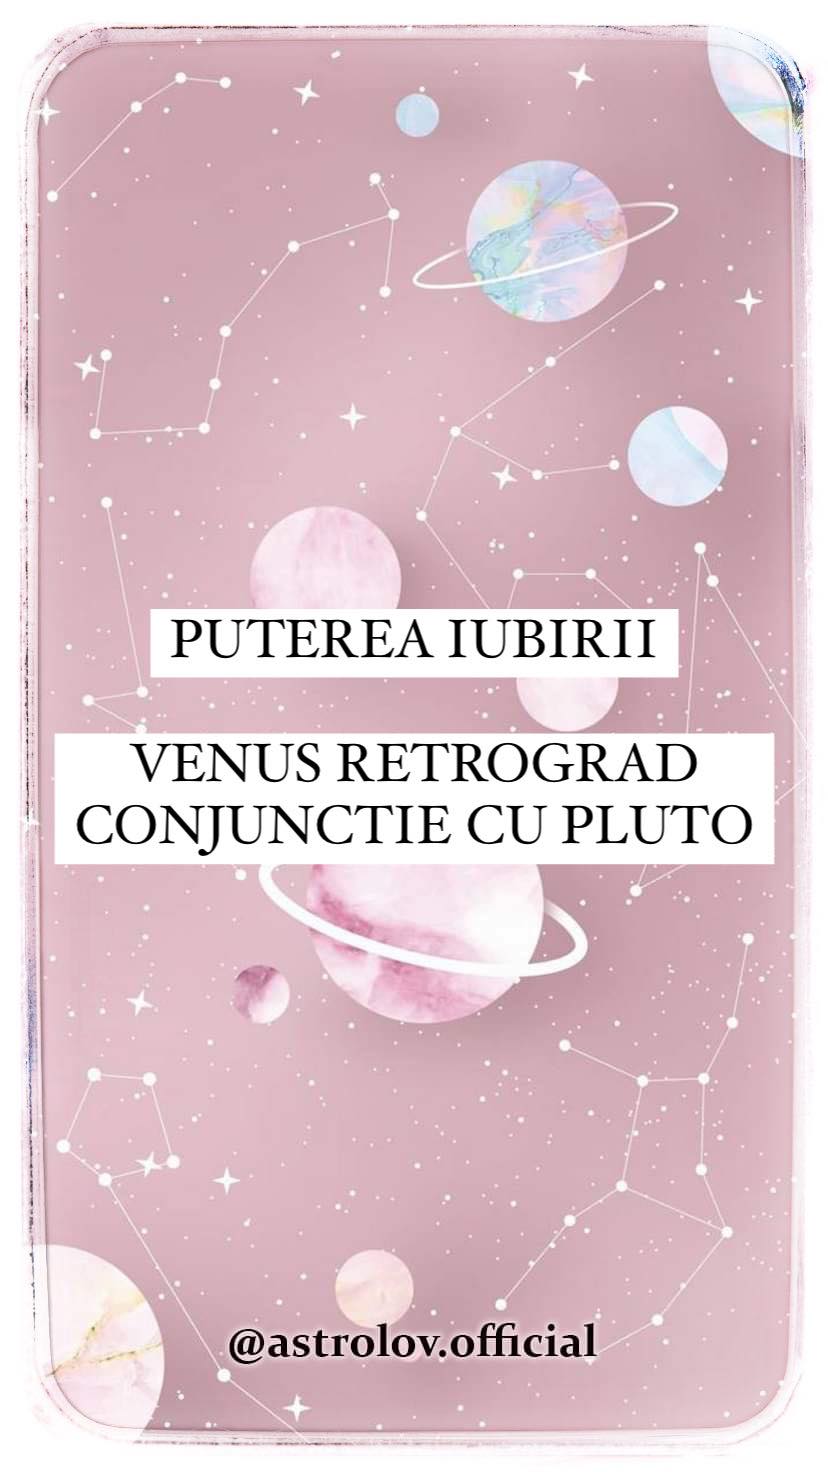 Puterea iubirii – Venus retrograd conjunctie cu Pluto